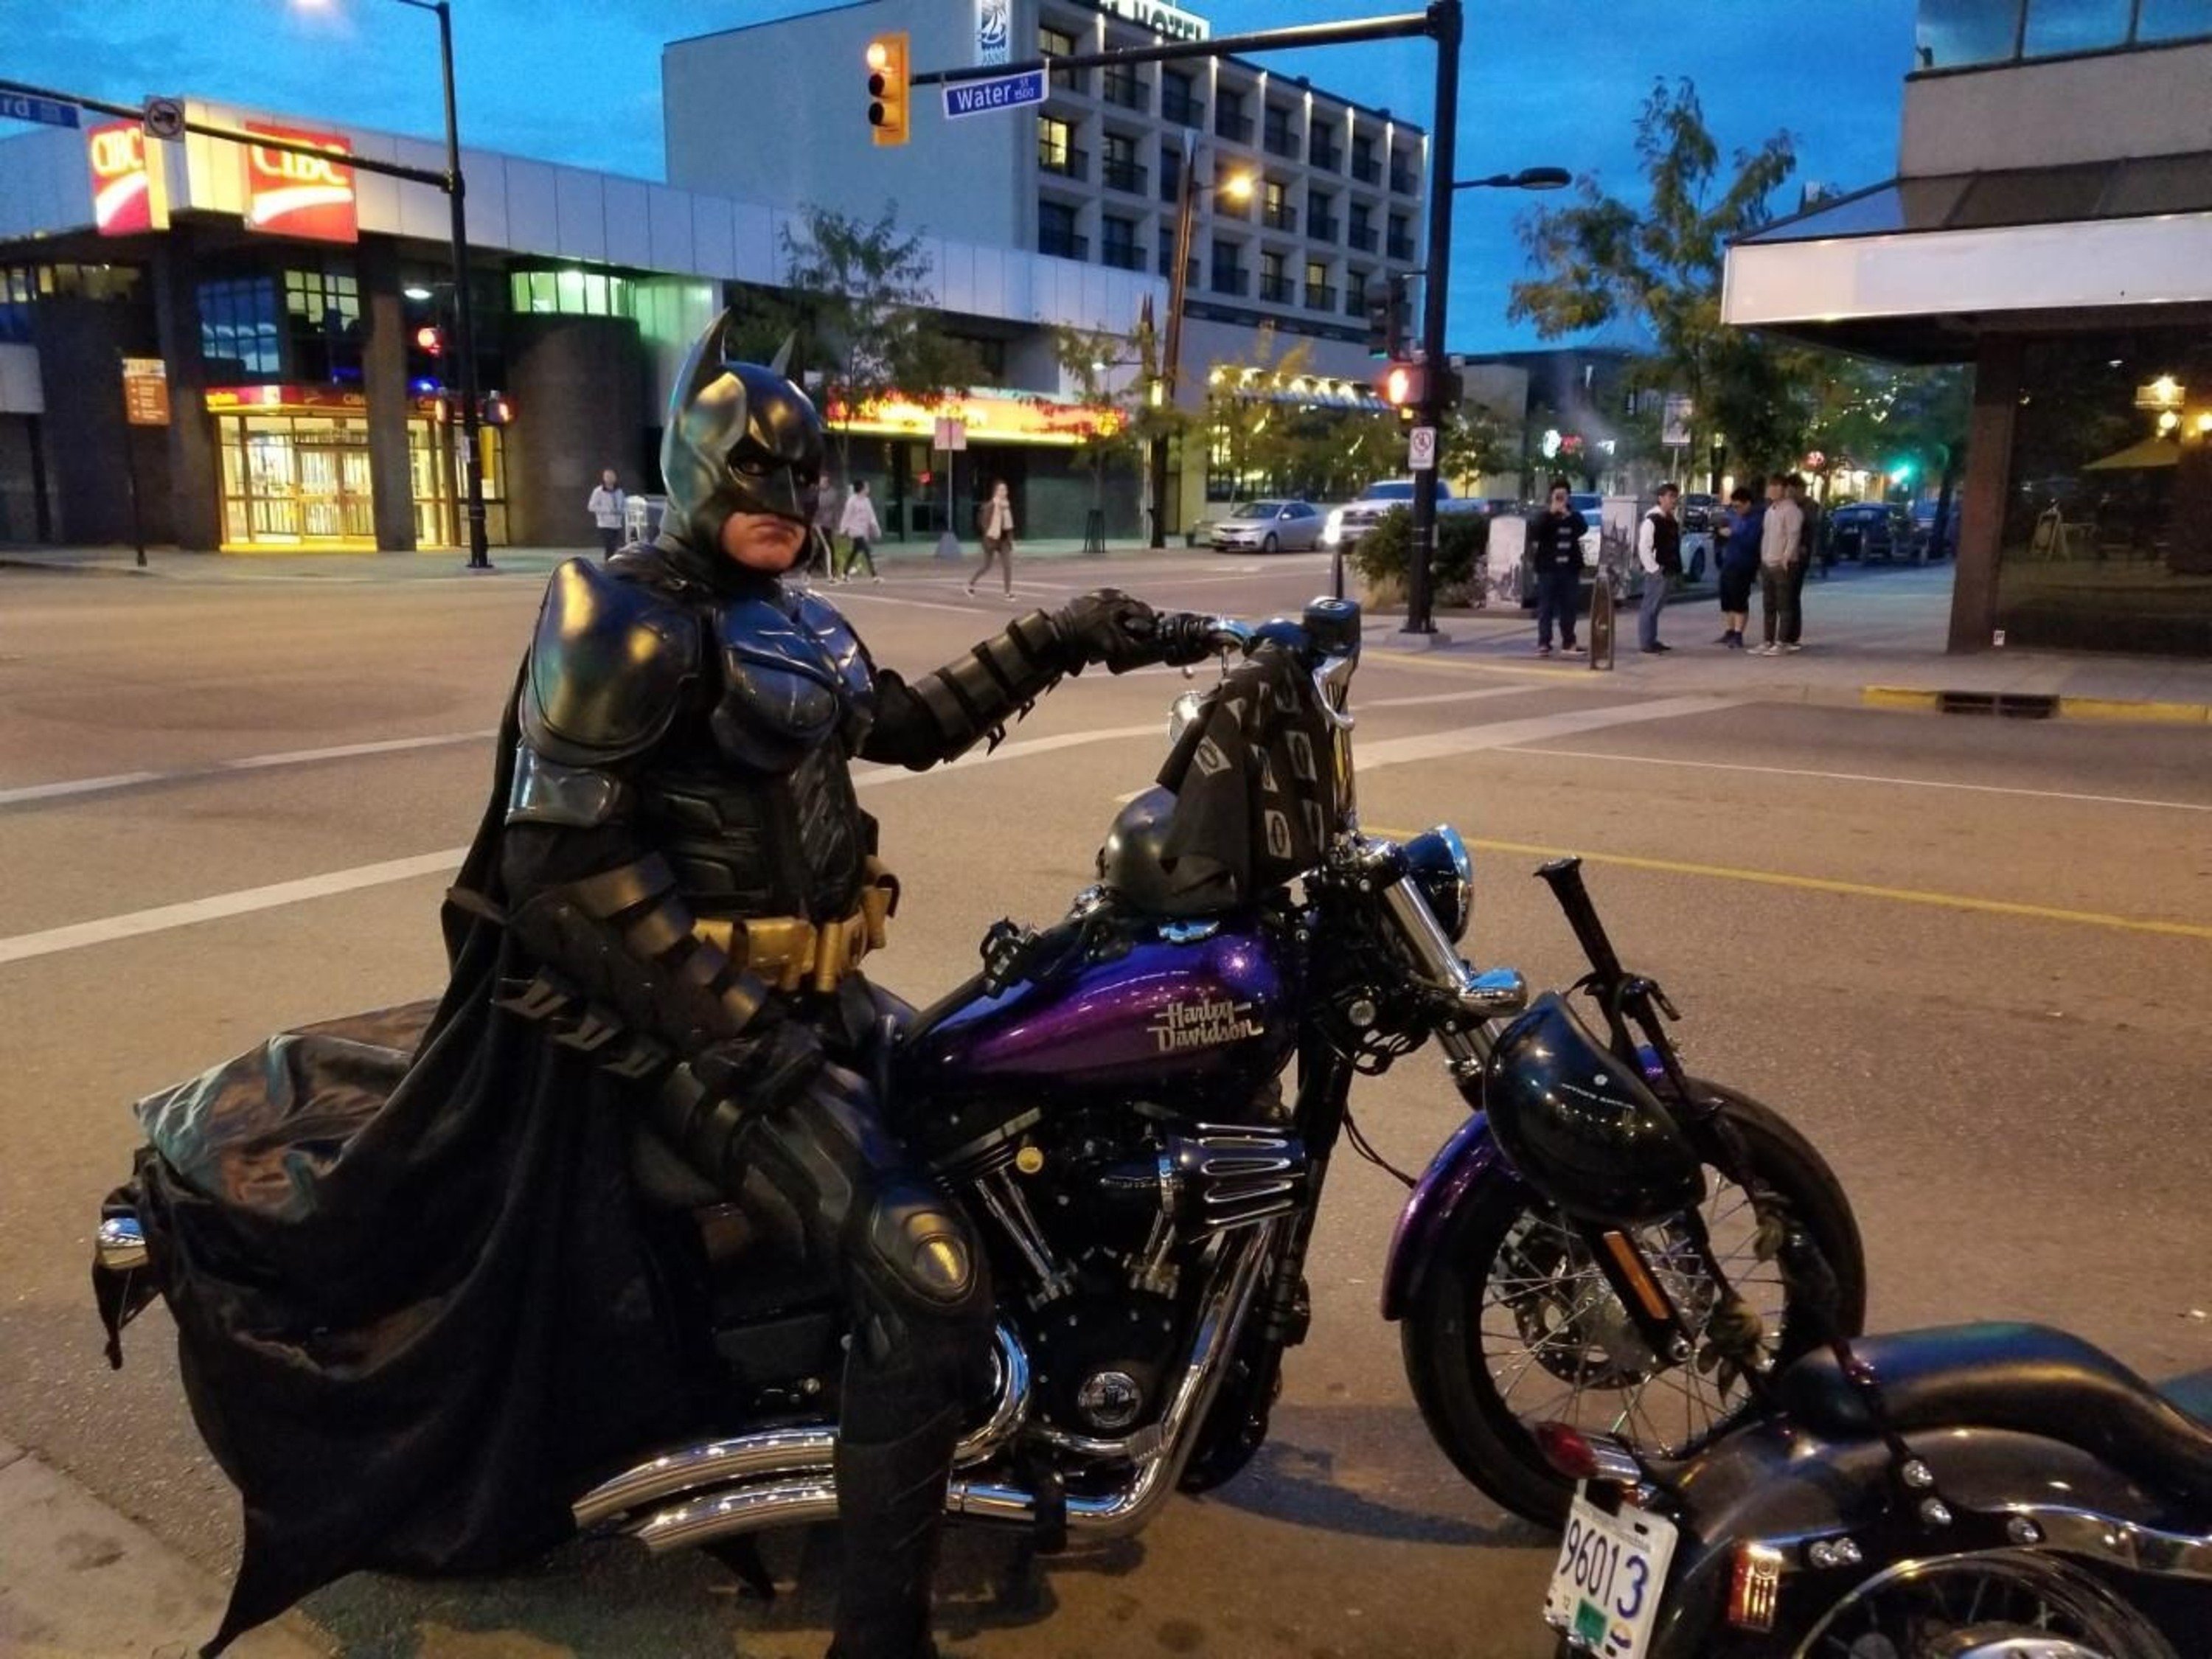 Incredibile: Batmobile (PickUp) e Batman (tarocco) insieme alla polizia pronta a sparare [video]